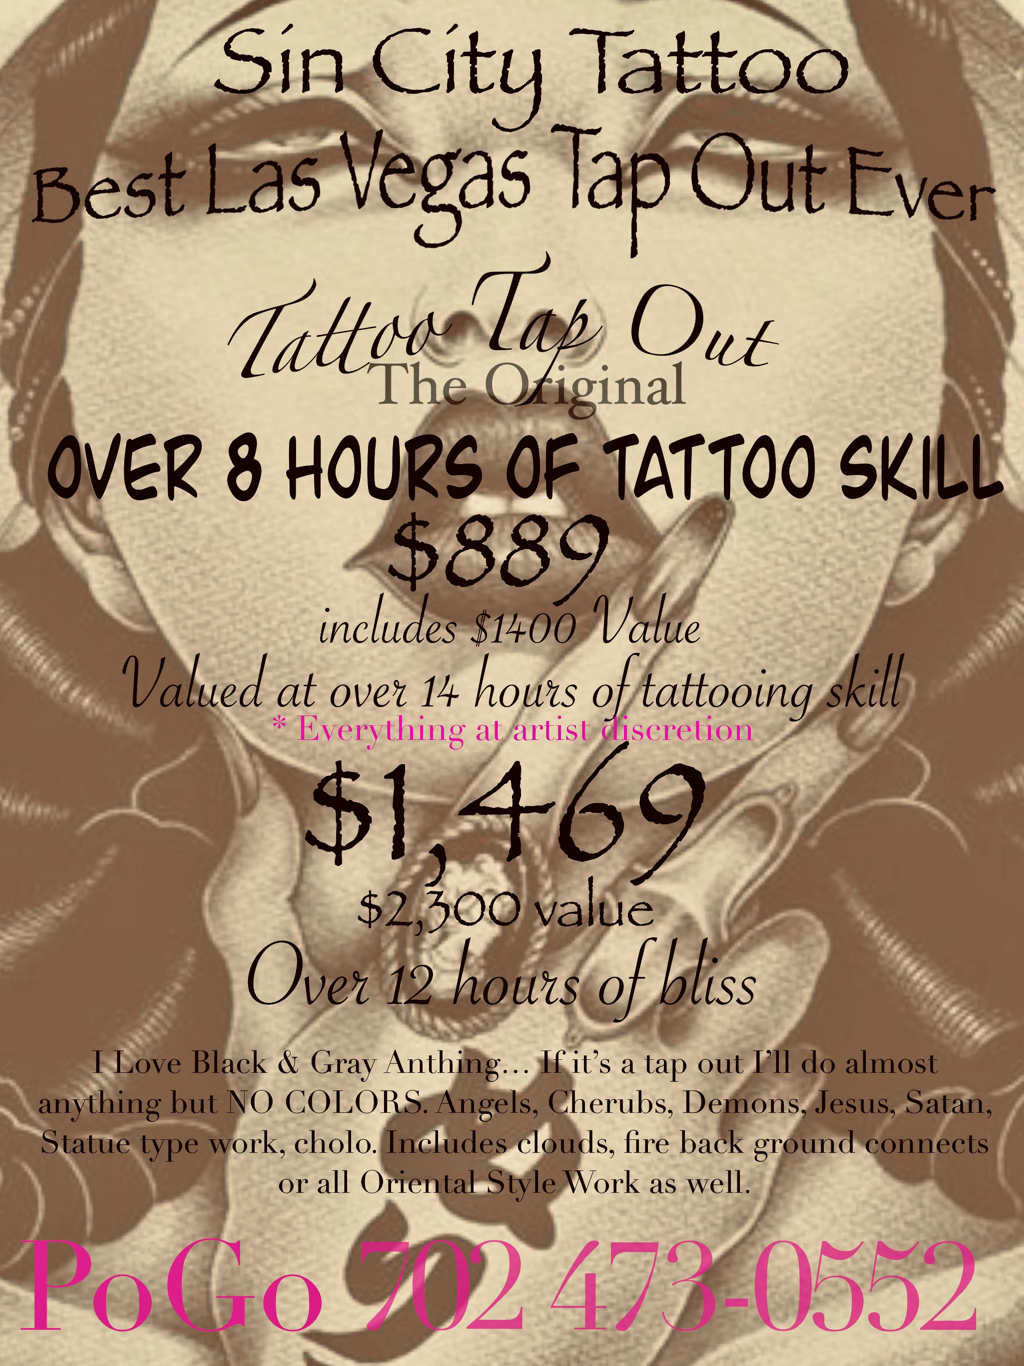 Half Day Tattoo Specials - Sin City Tattoo Shop